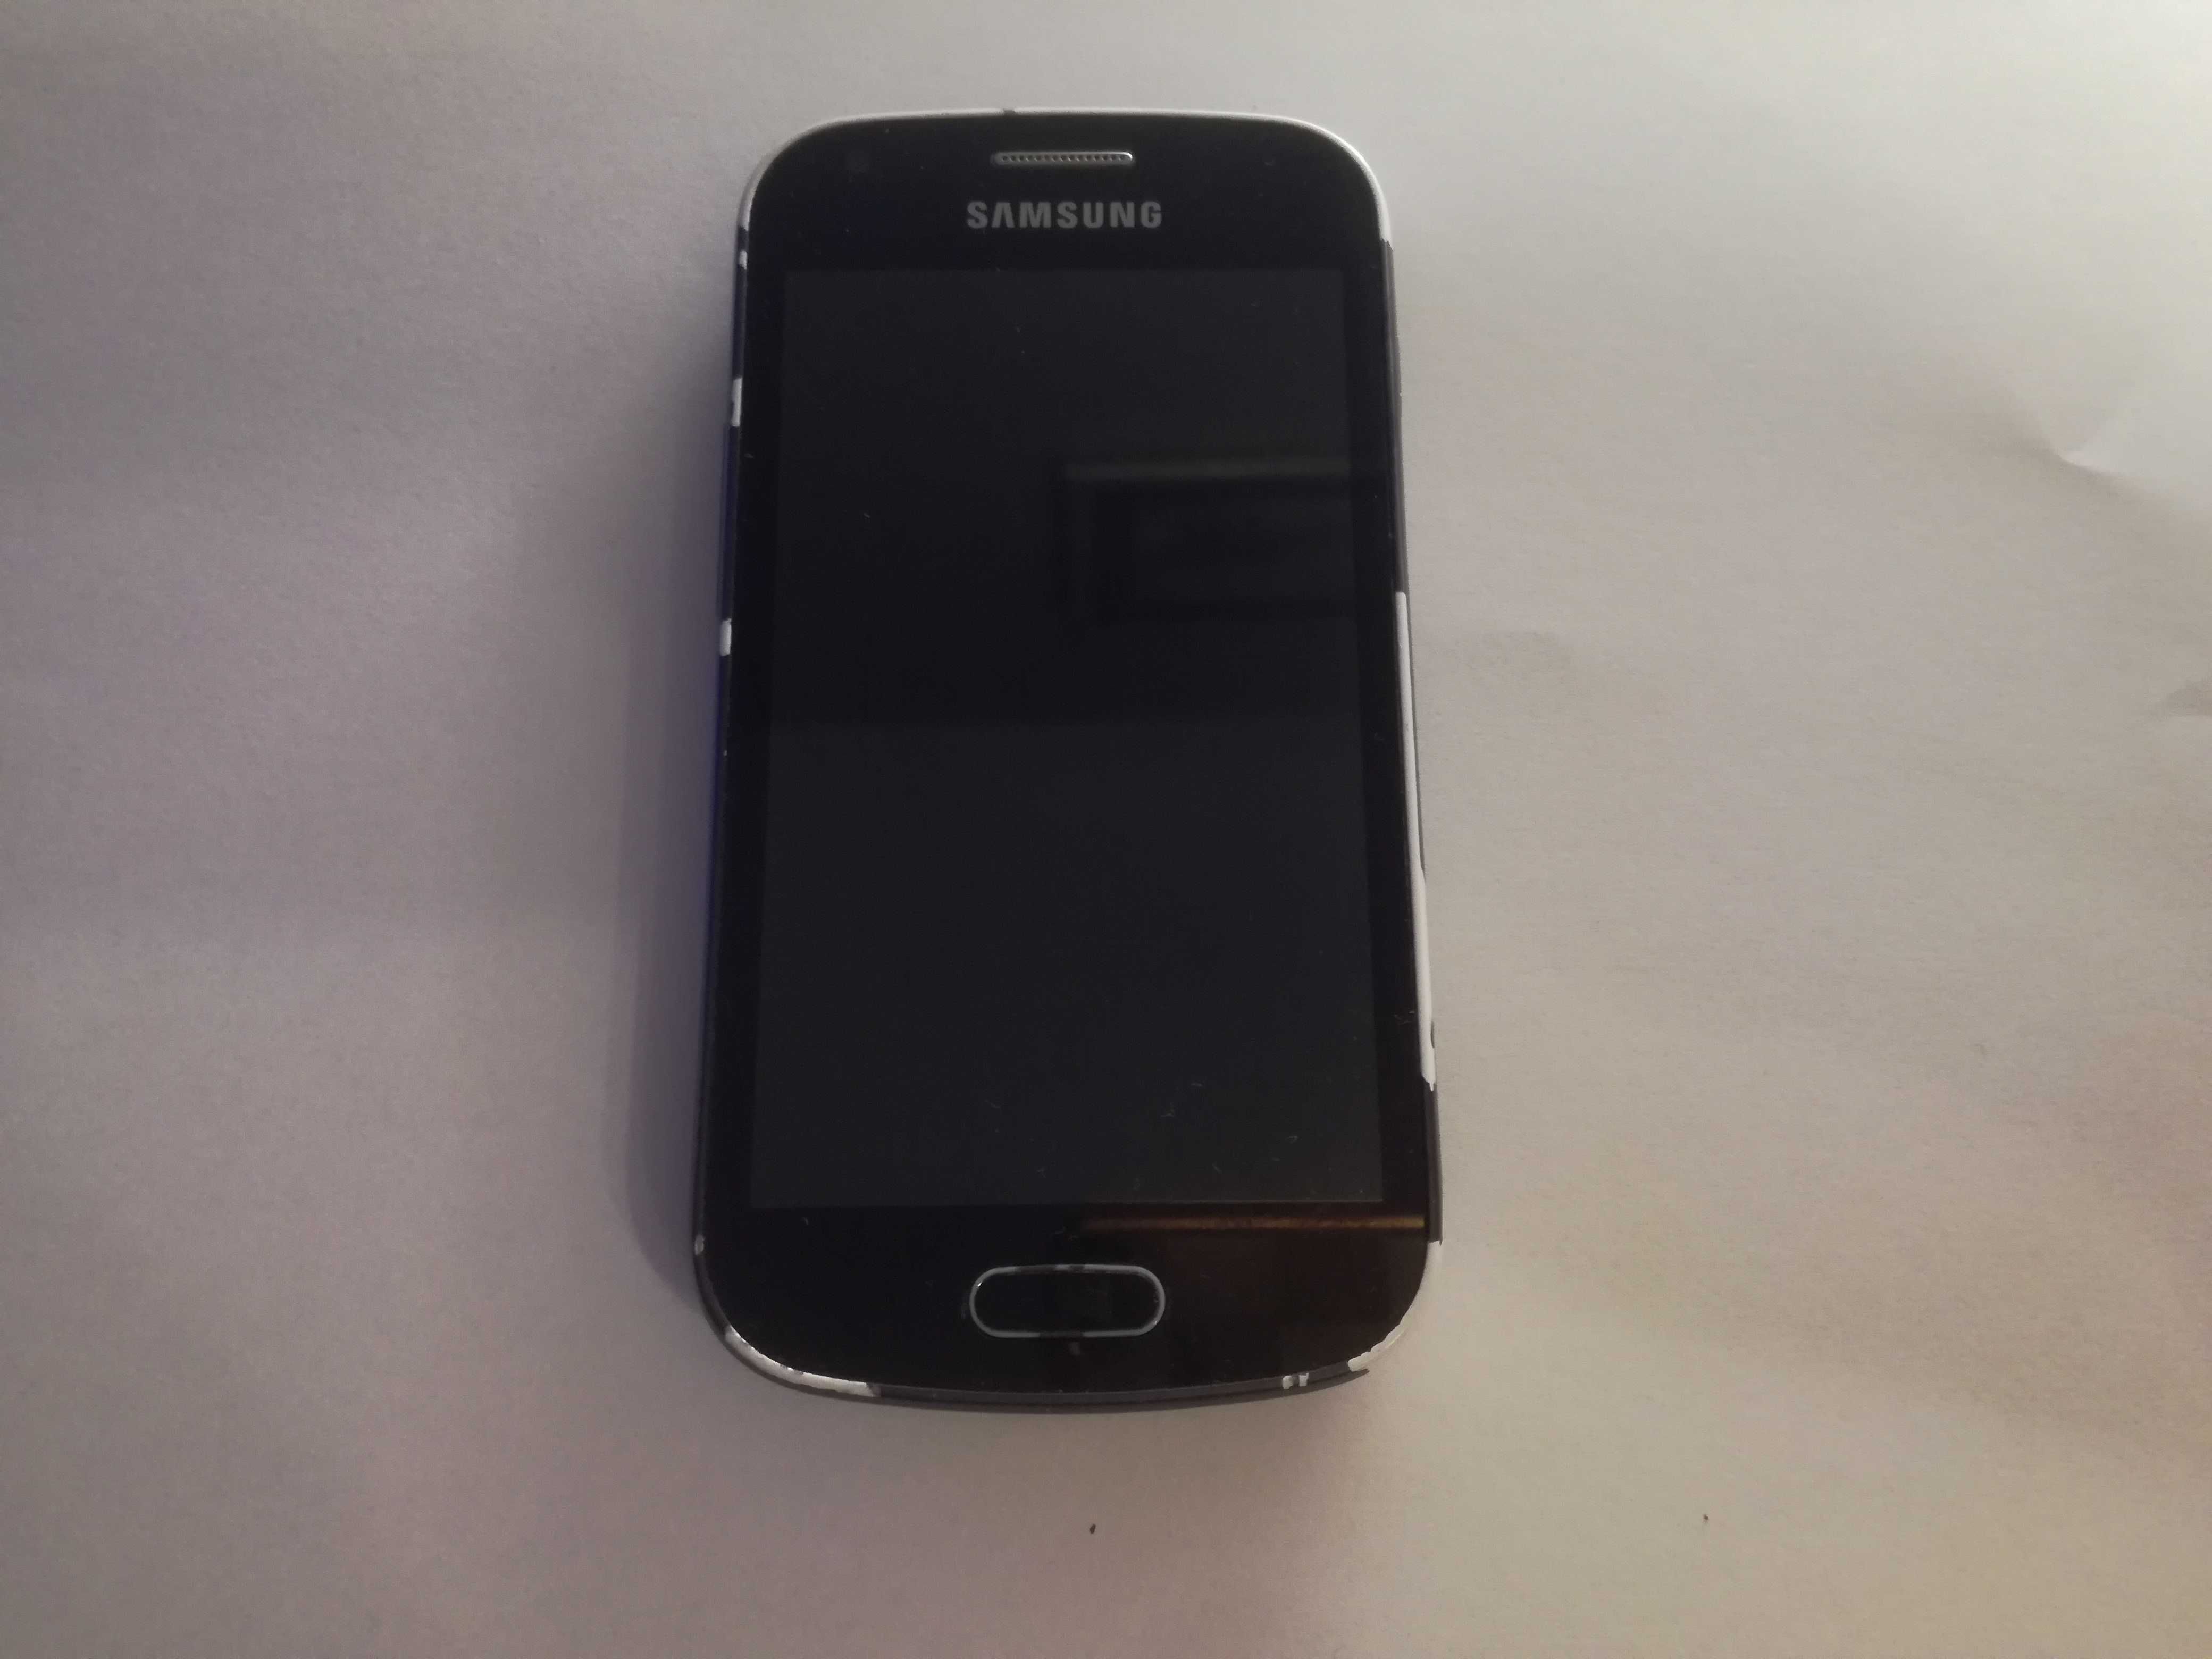 Samsung Galaxy GT-S7580